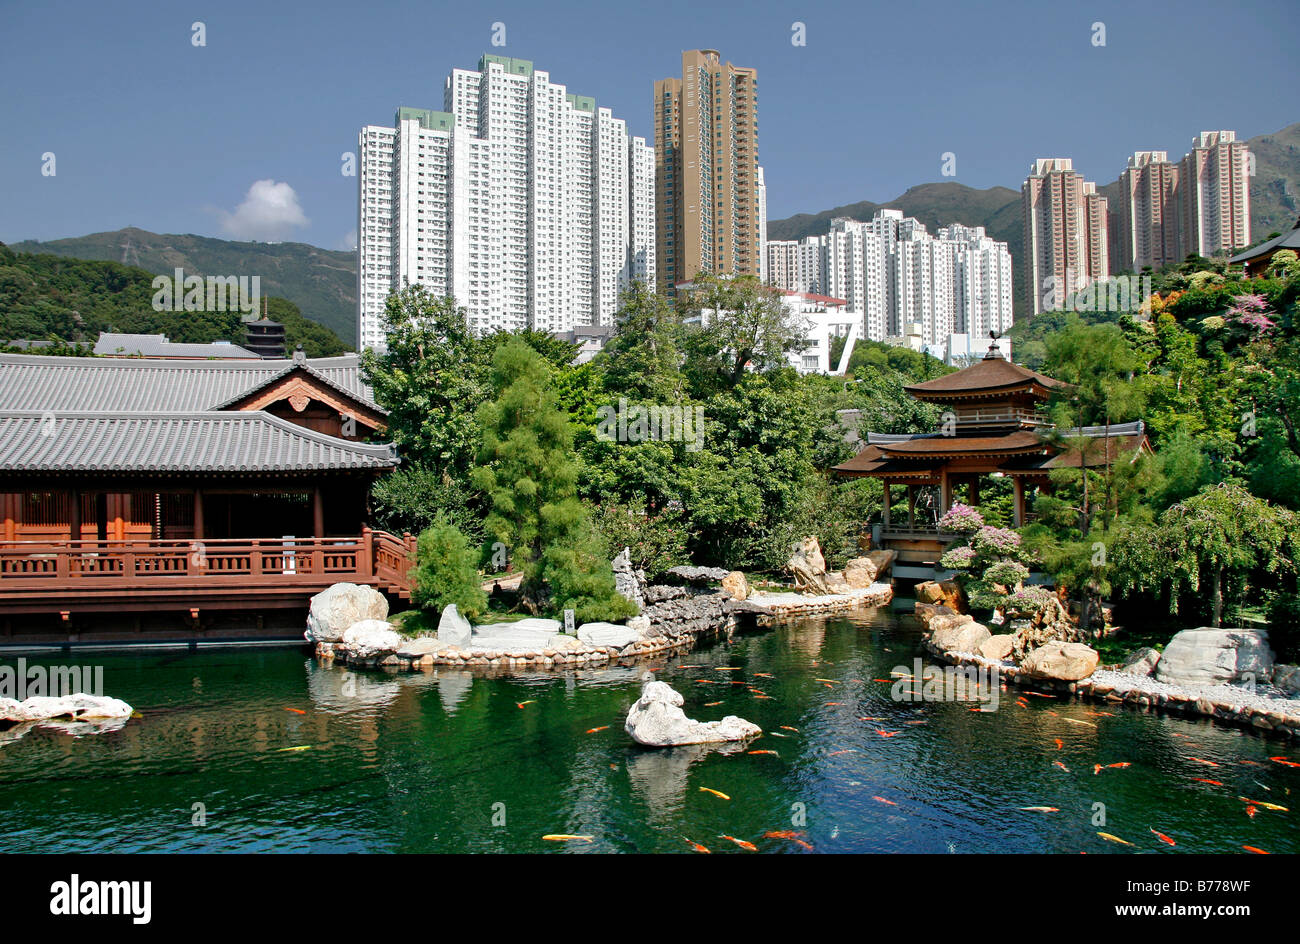 Pagoda and a lake with Koi fish in Chi Lin Botanical Garden, park in Kowloon, Hong Kong, China, Asia Stock Photo